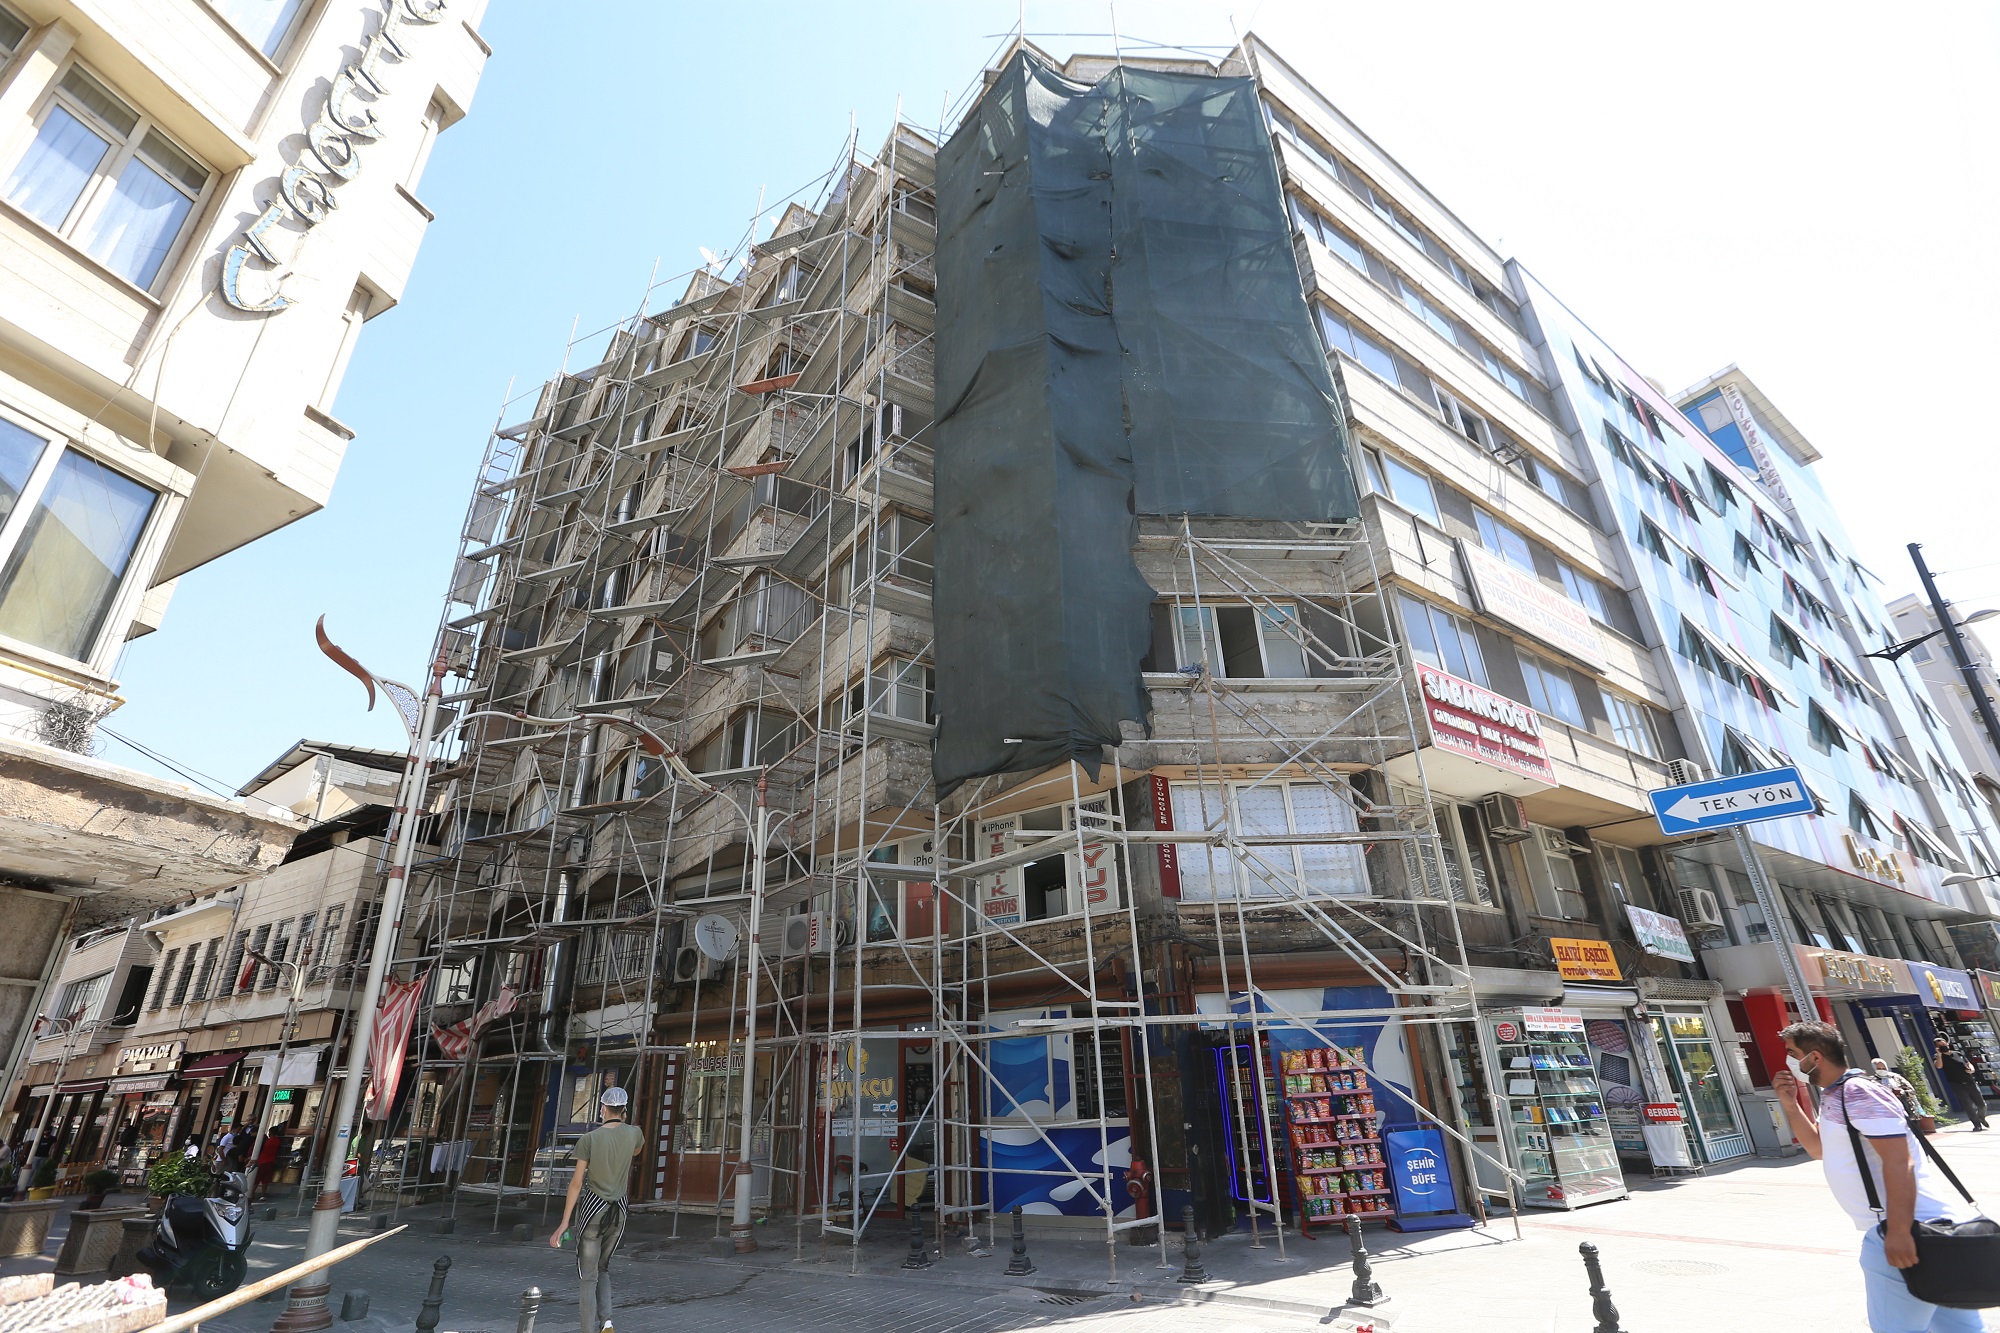  Gaziantep Suburcu Caddesi’ndeki Yapılar Estetize Ediliyor